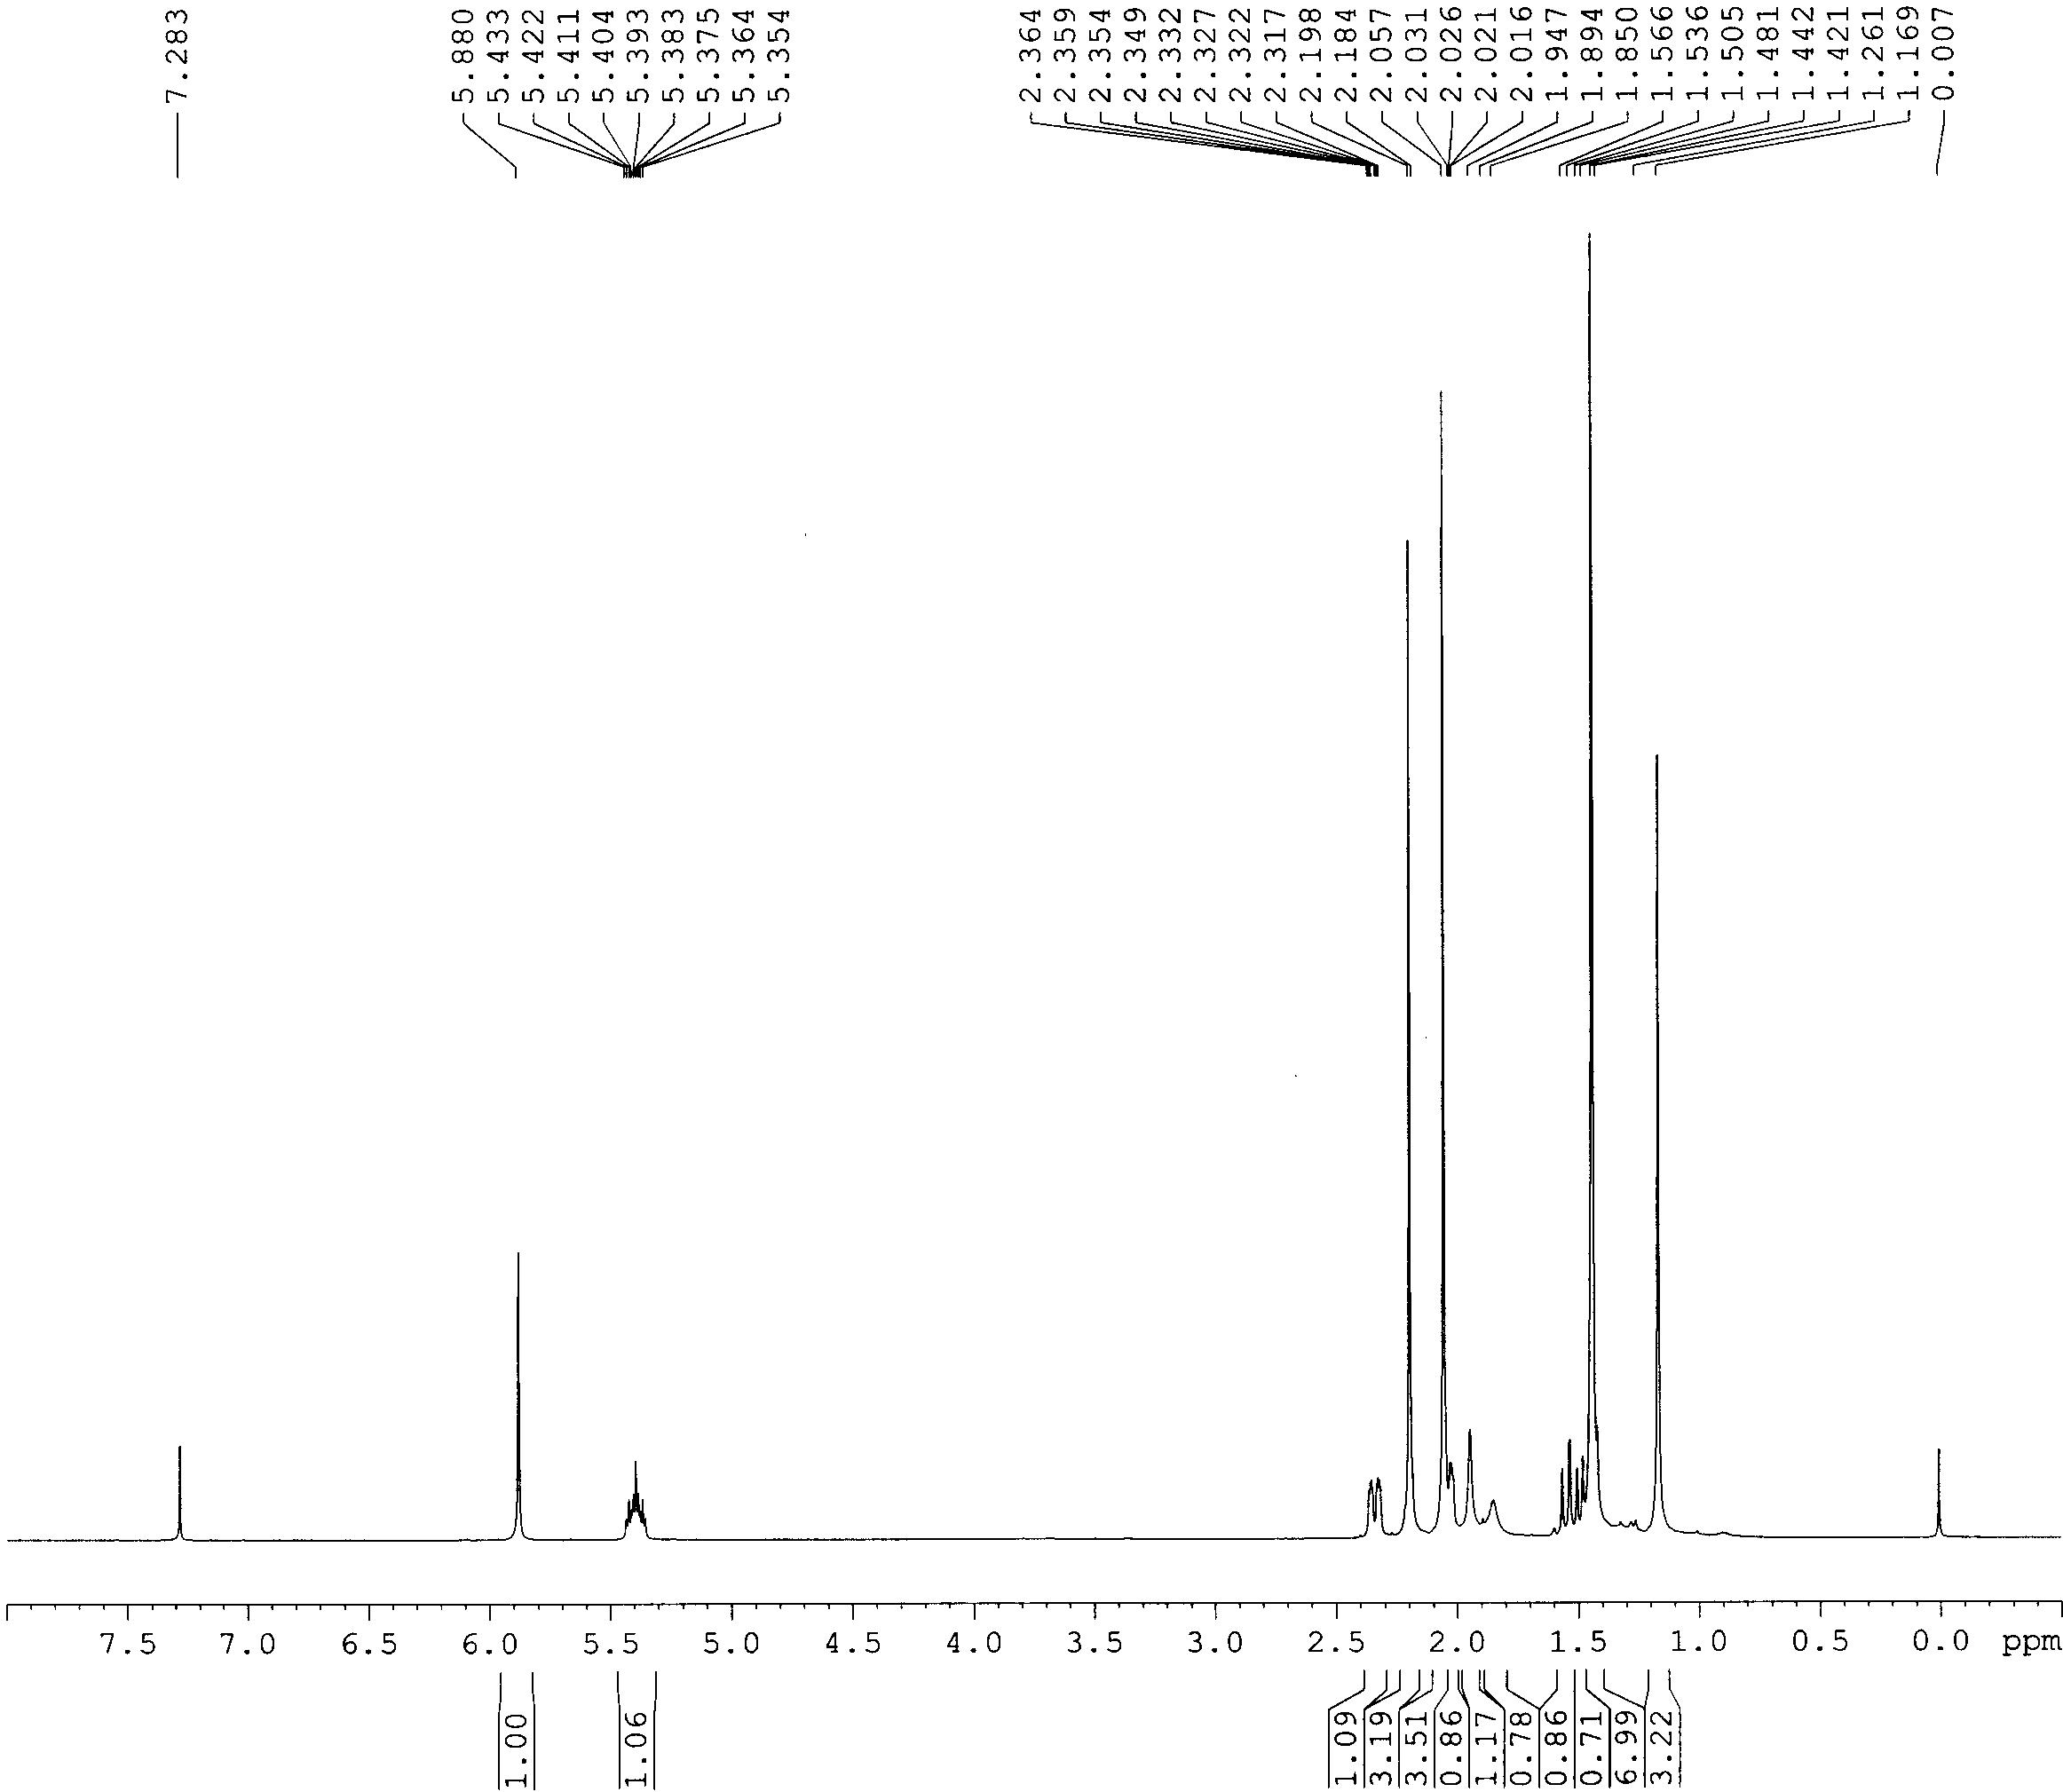 1H-NMR spectrum of compound 10